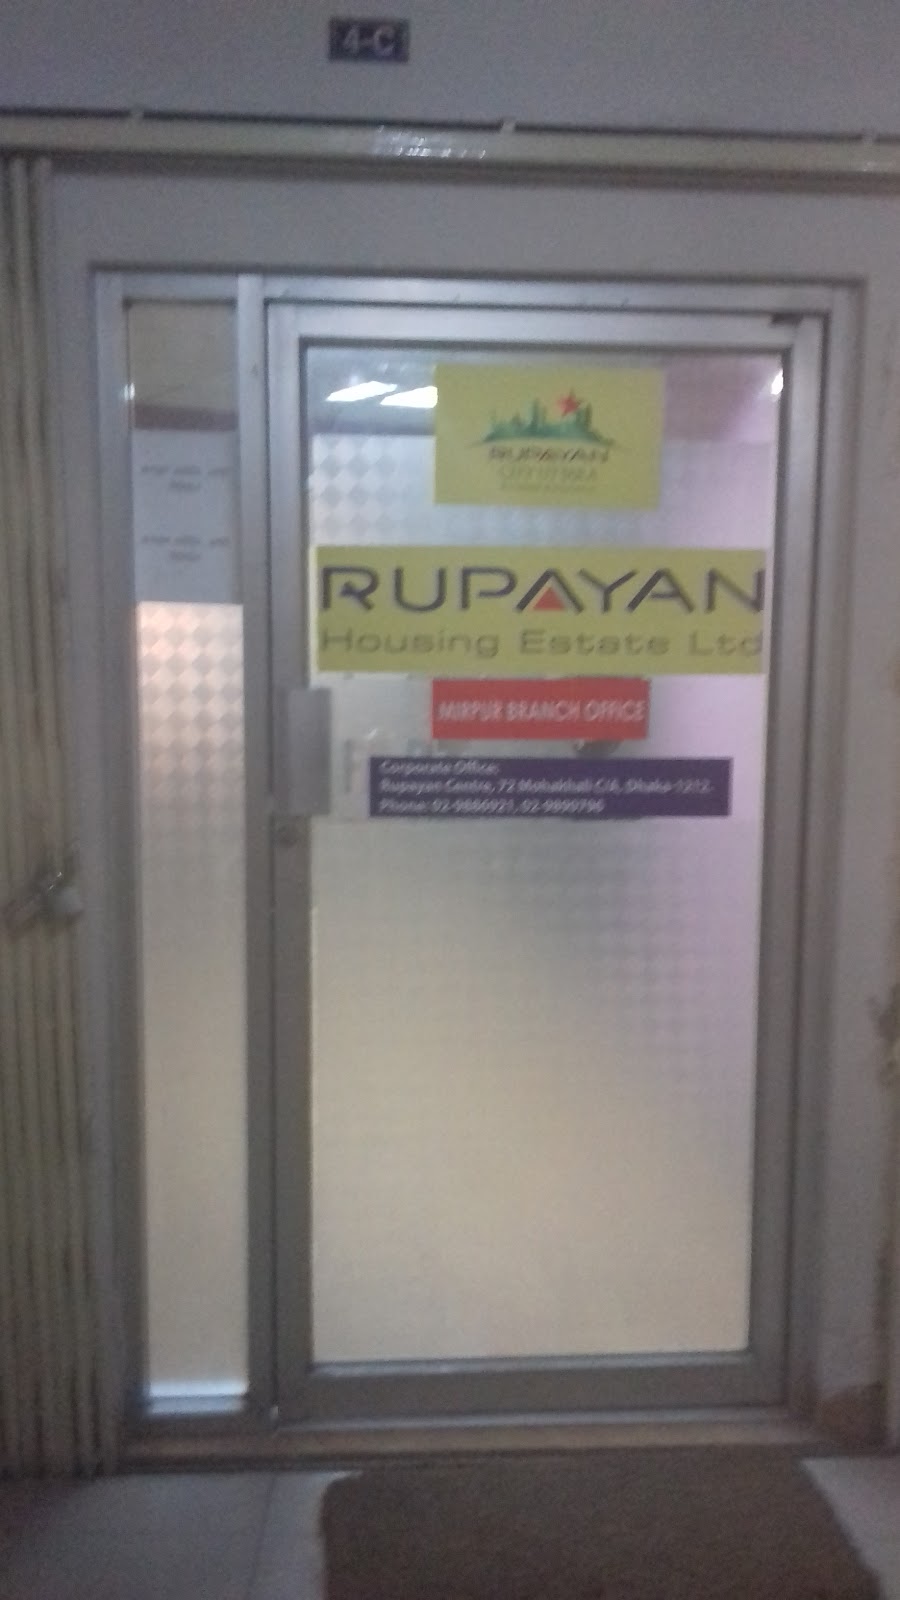 Rupayan Housing Estate Ltd